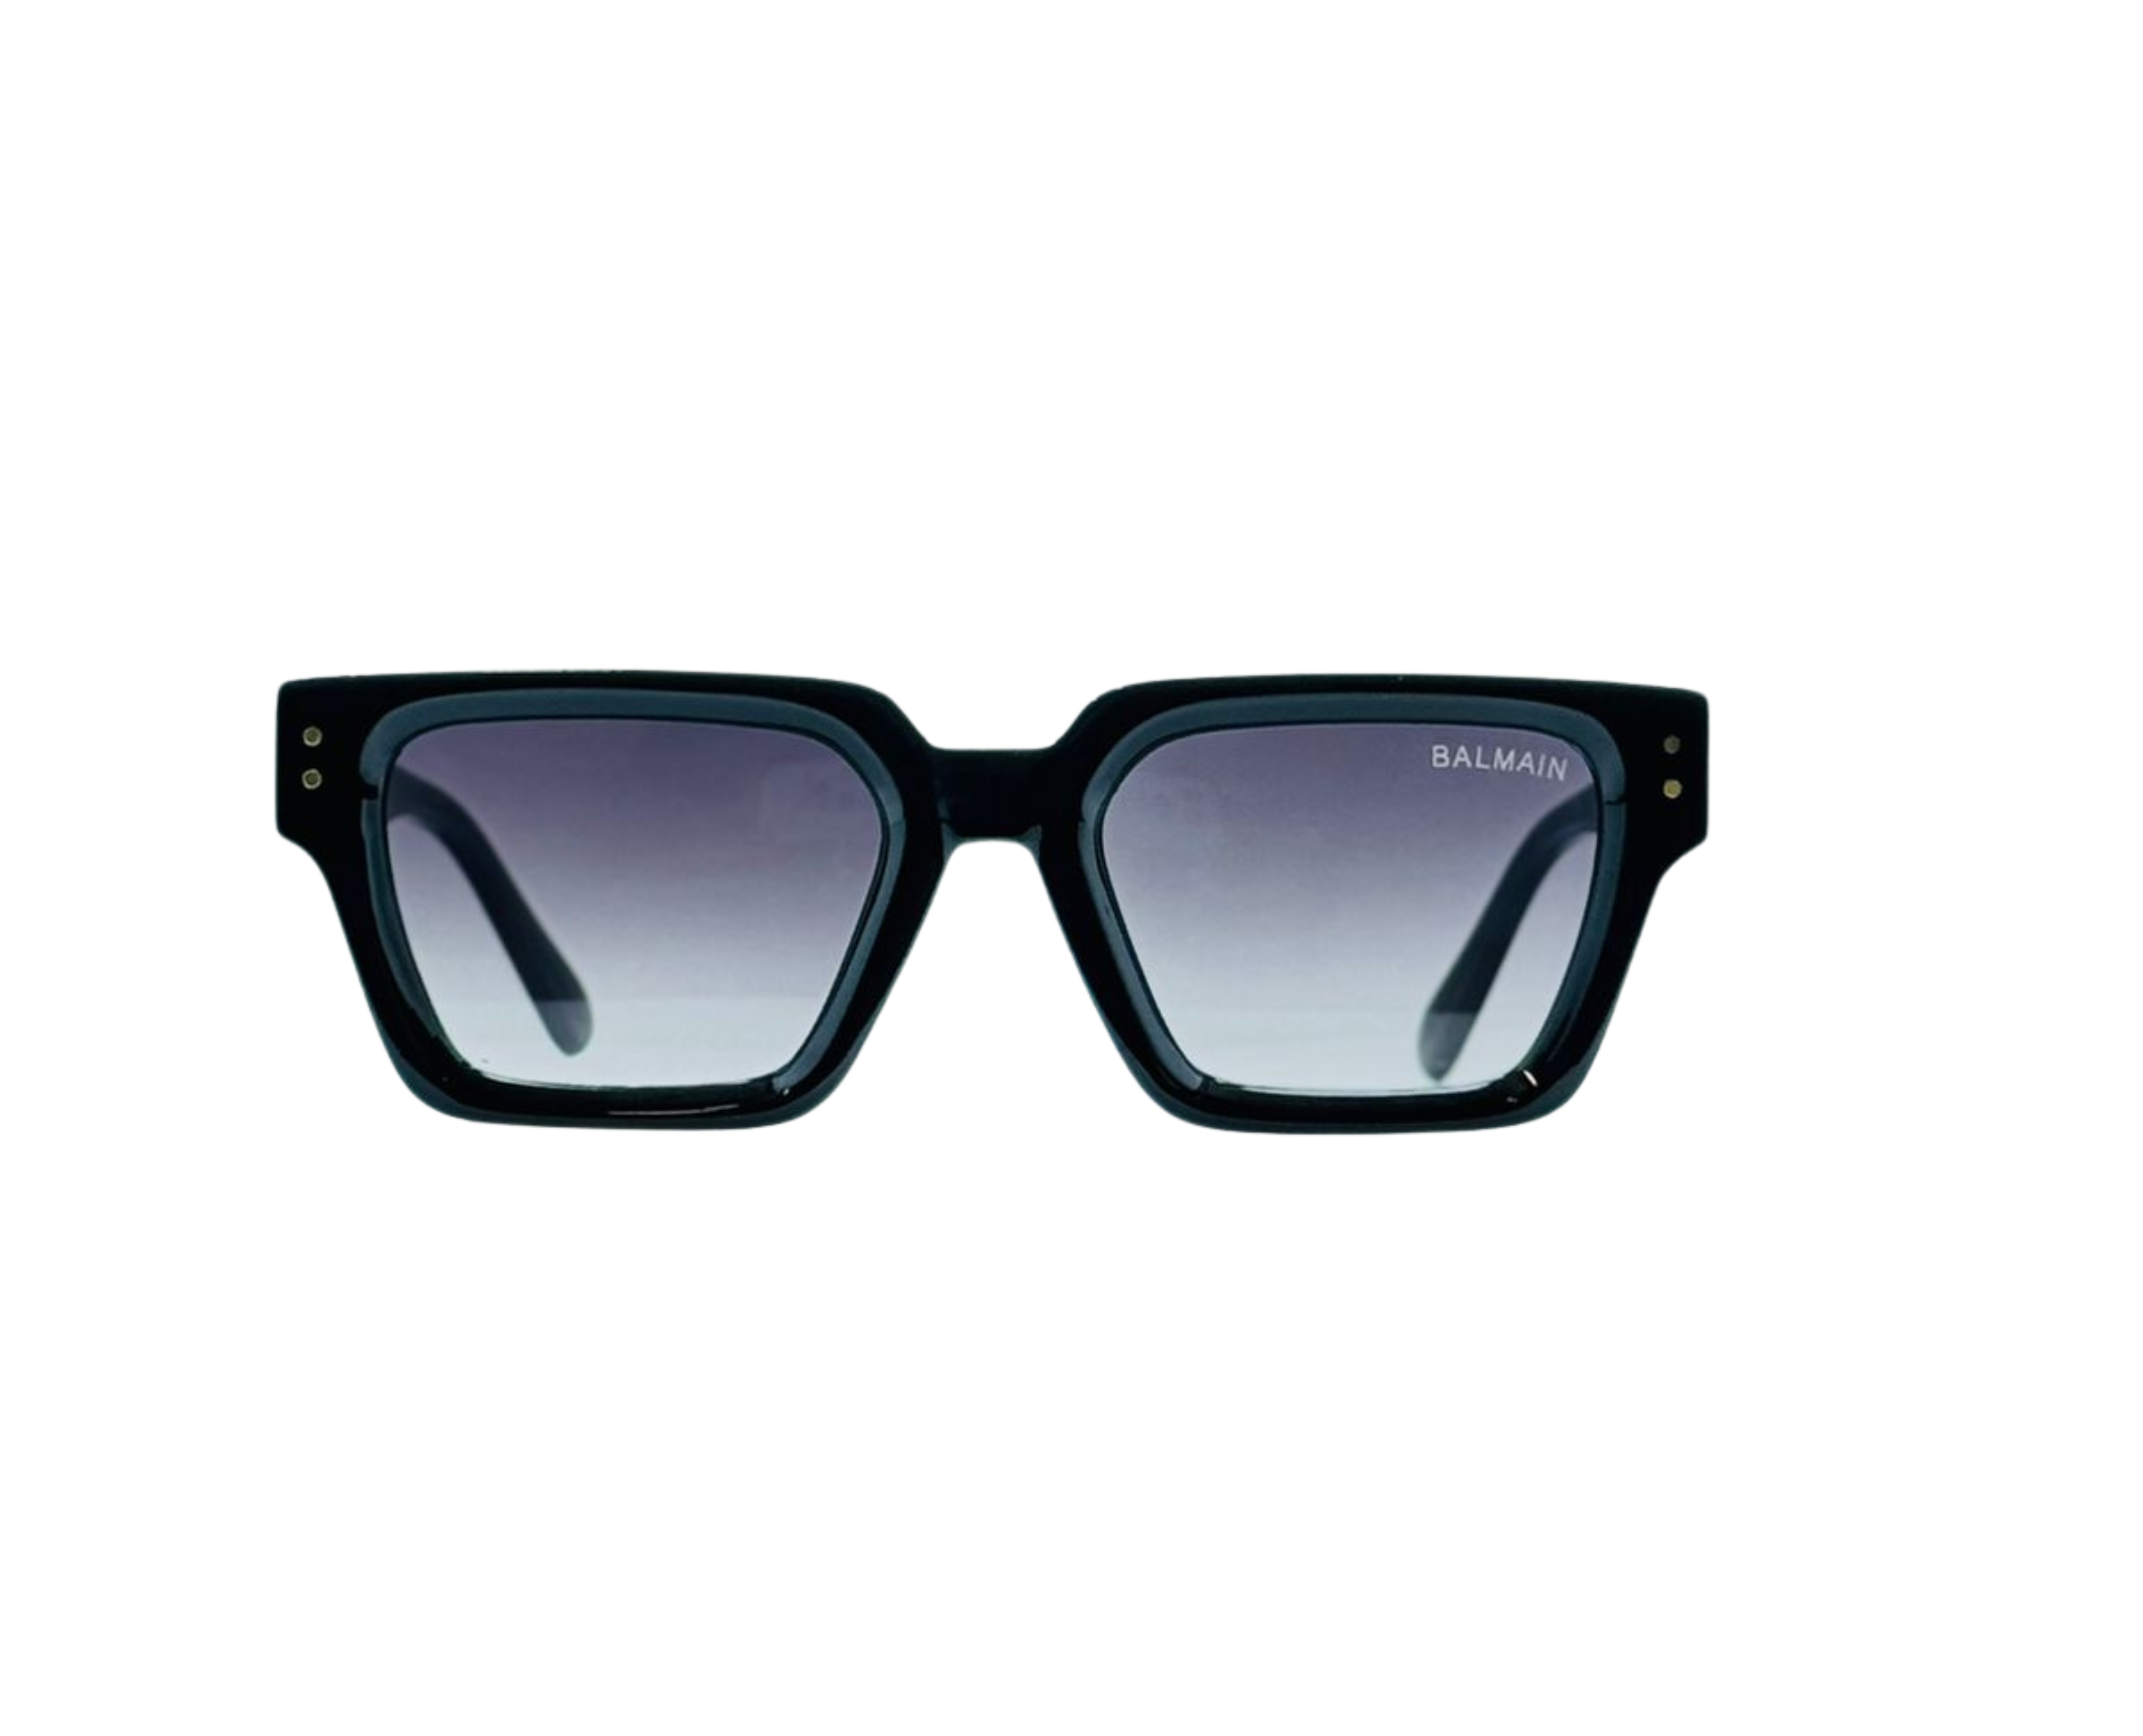 NS Luxury - 167 - Black - Sunglasses